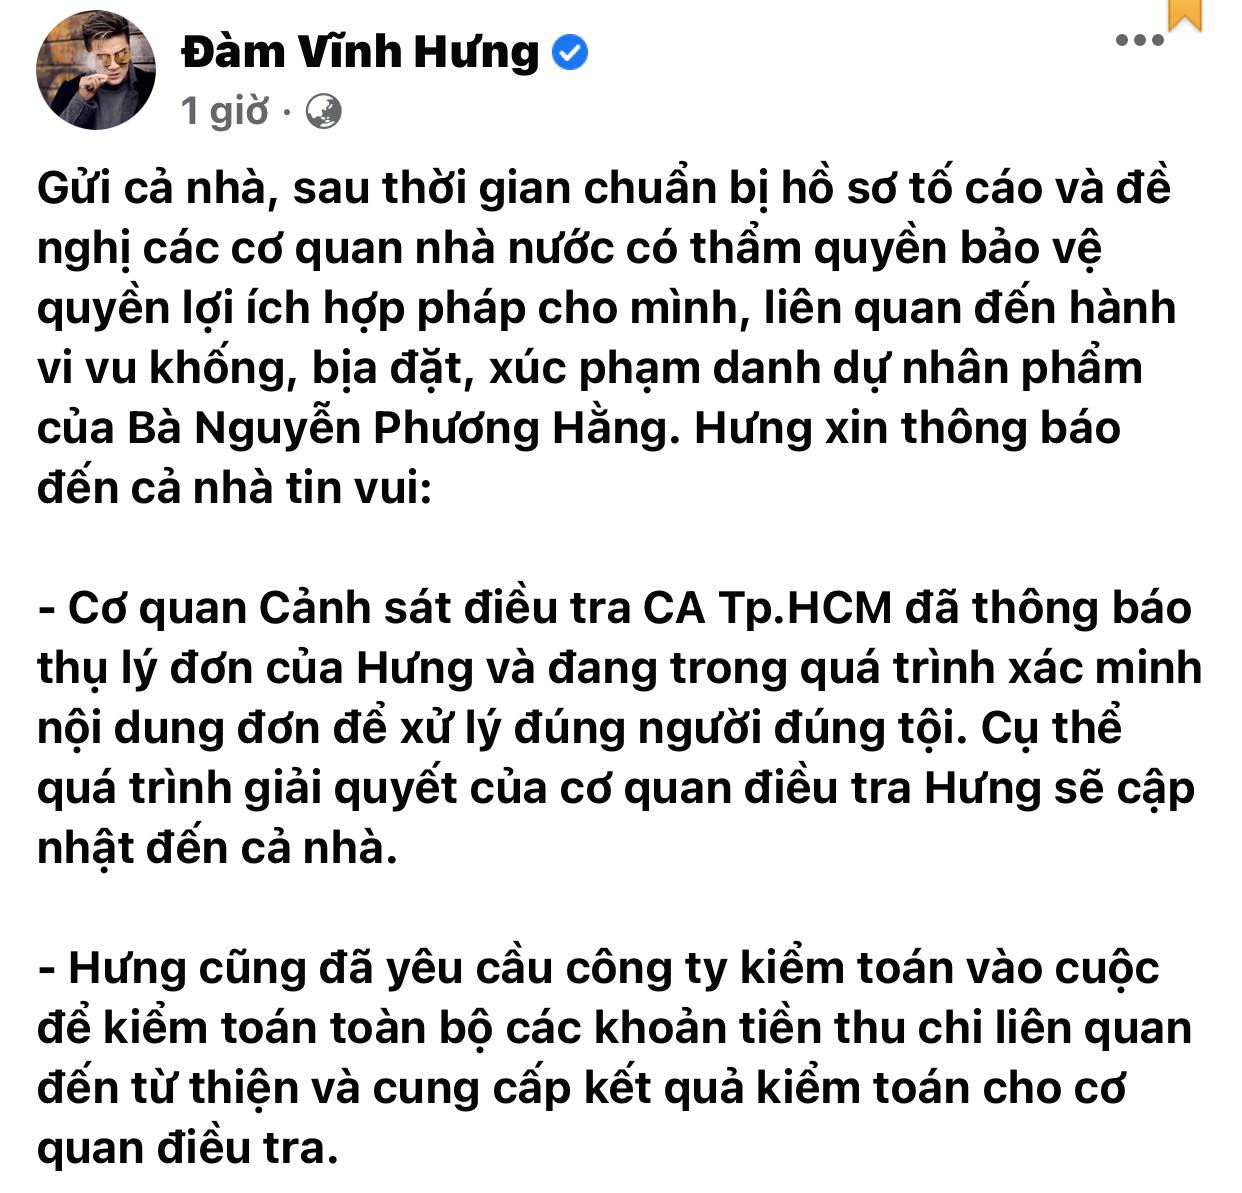 Dam-vinh-hung-hao-huc-bao-tin-vui-lien-tiep-xac-nhan-da-kien-ba-hang-va-yeu-cau-kiem-toan-vao-cuoc